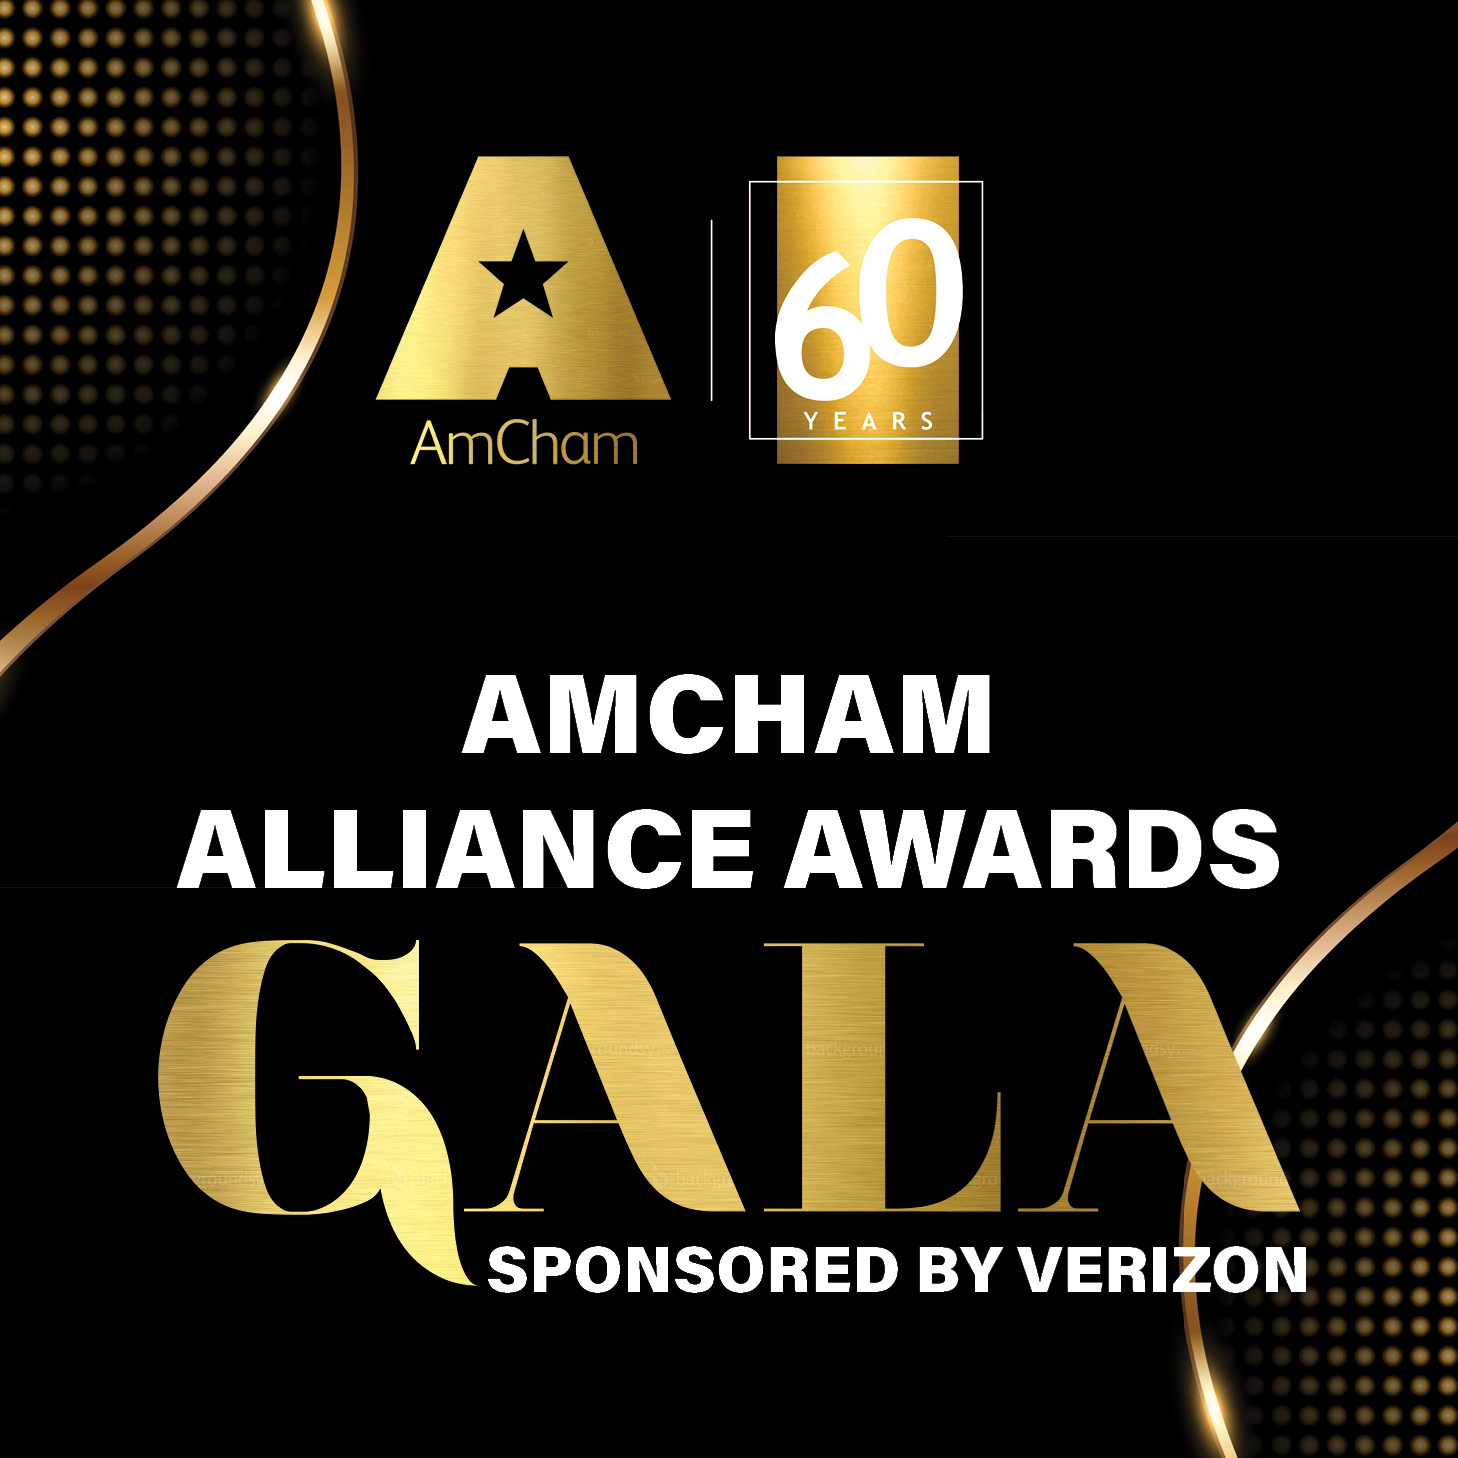 AmCham Alliance Awards Gala